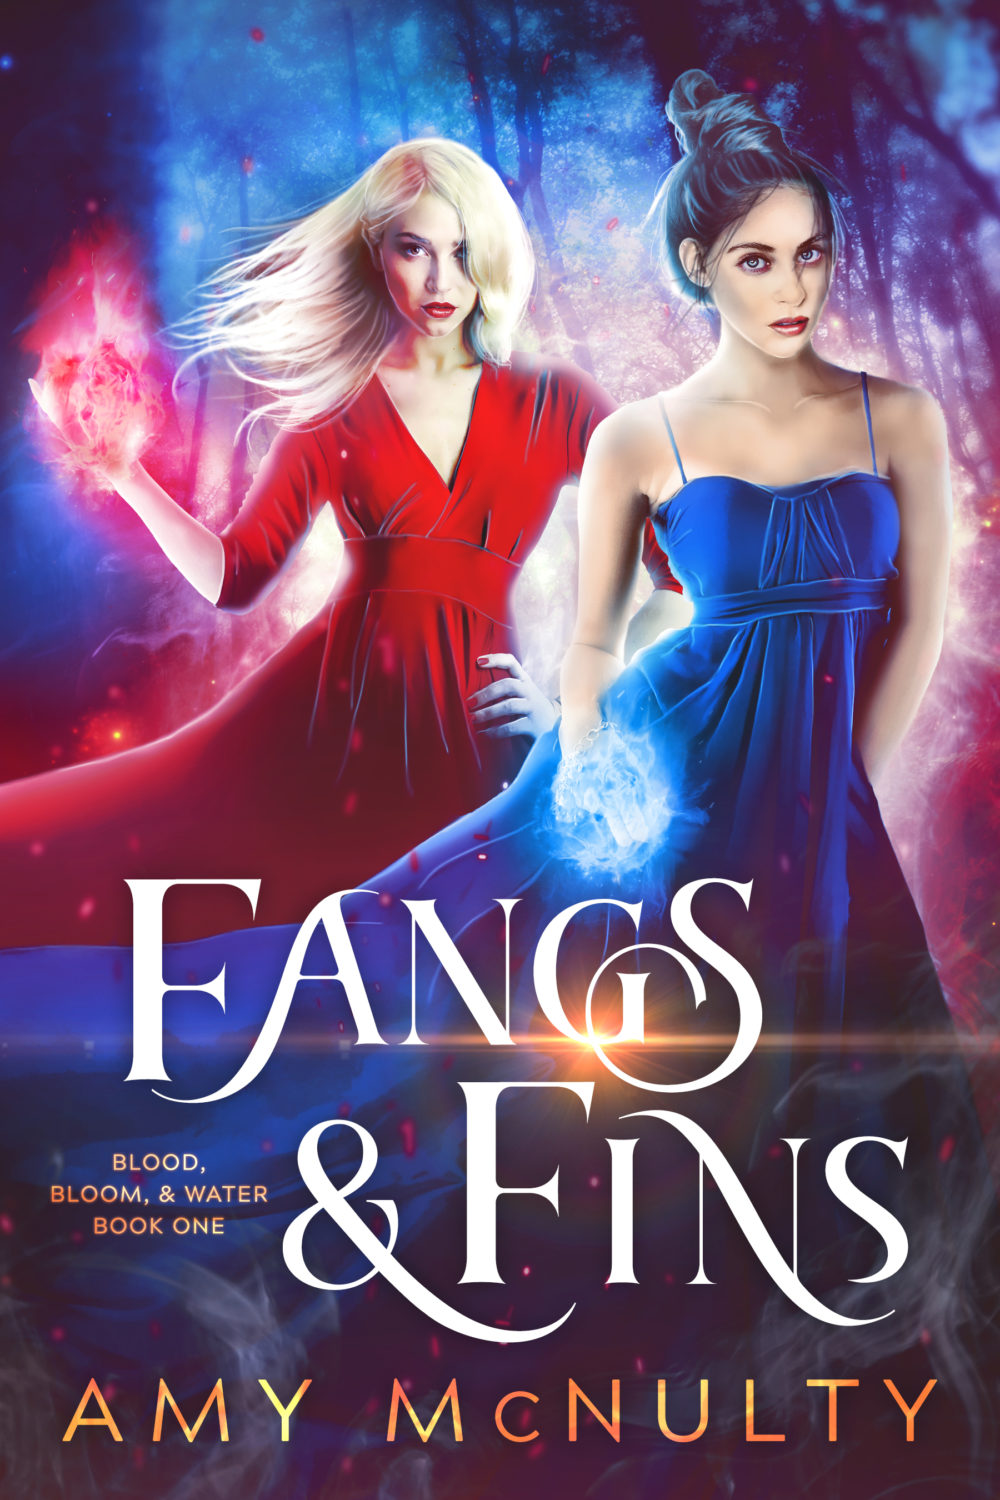 Fangs & Fins by Amy McNulty